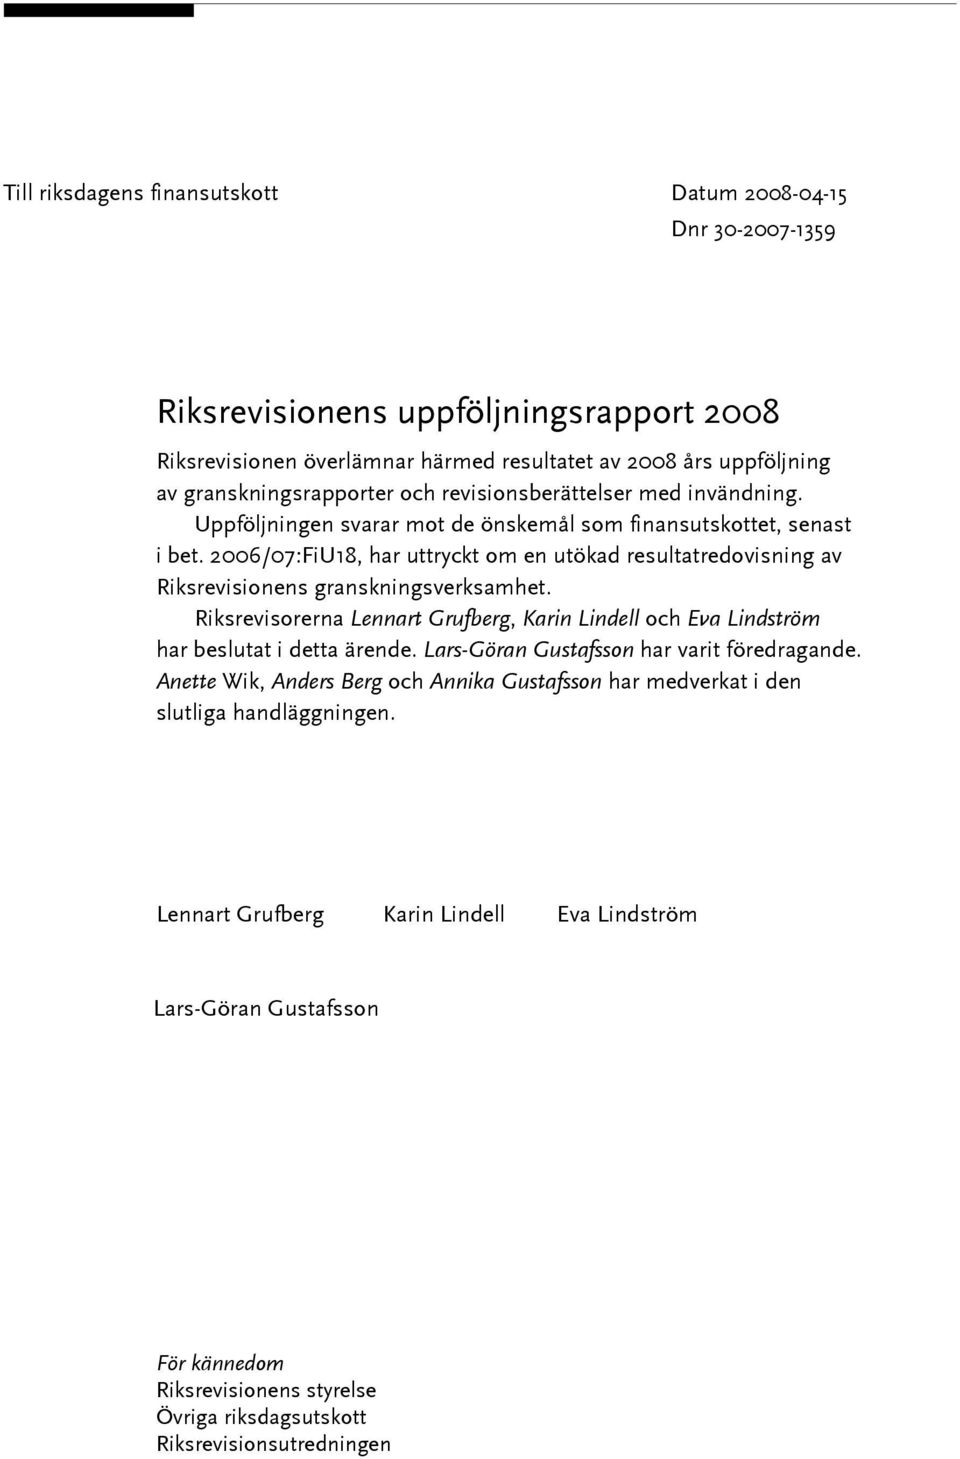 2006/07:FiU18, har uttryckt om en utökad resultatredovisning av Riksrevisionens granskningsverksamhet. Riksrevisorerna Lennart Grufberg, Karin Lindell och Eva Lindström har beslutat i detta ärende.